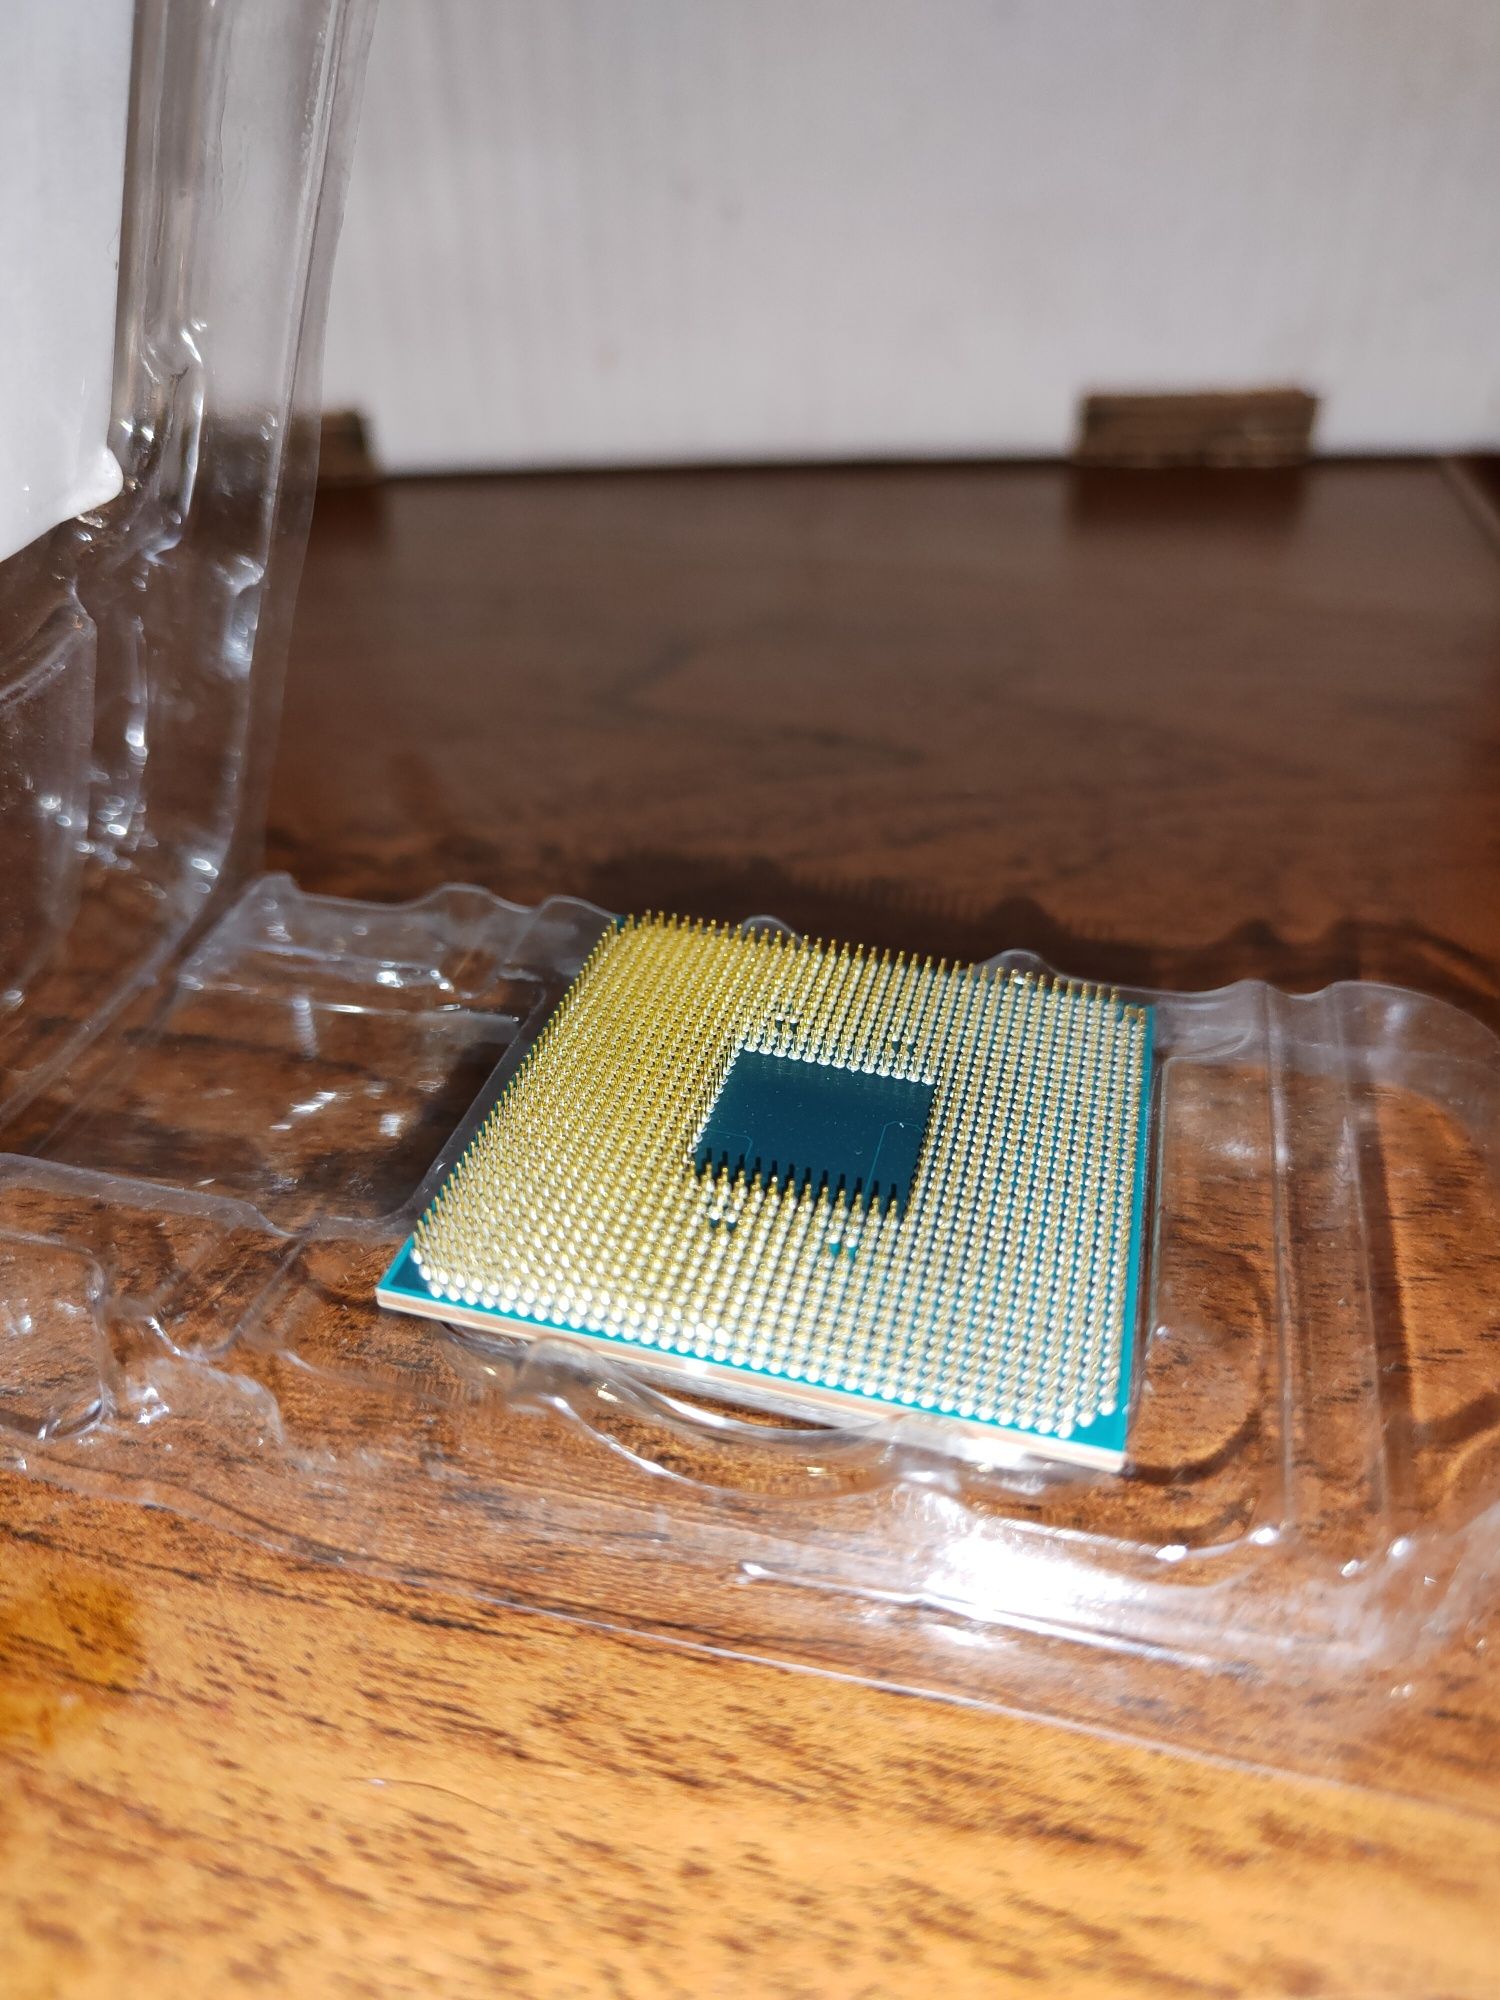 Процессор AMD Athlon 3000G